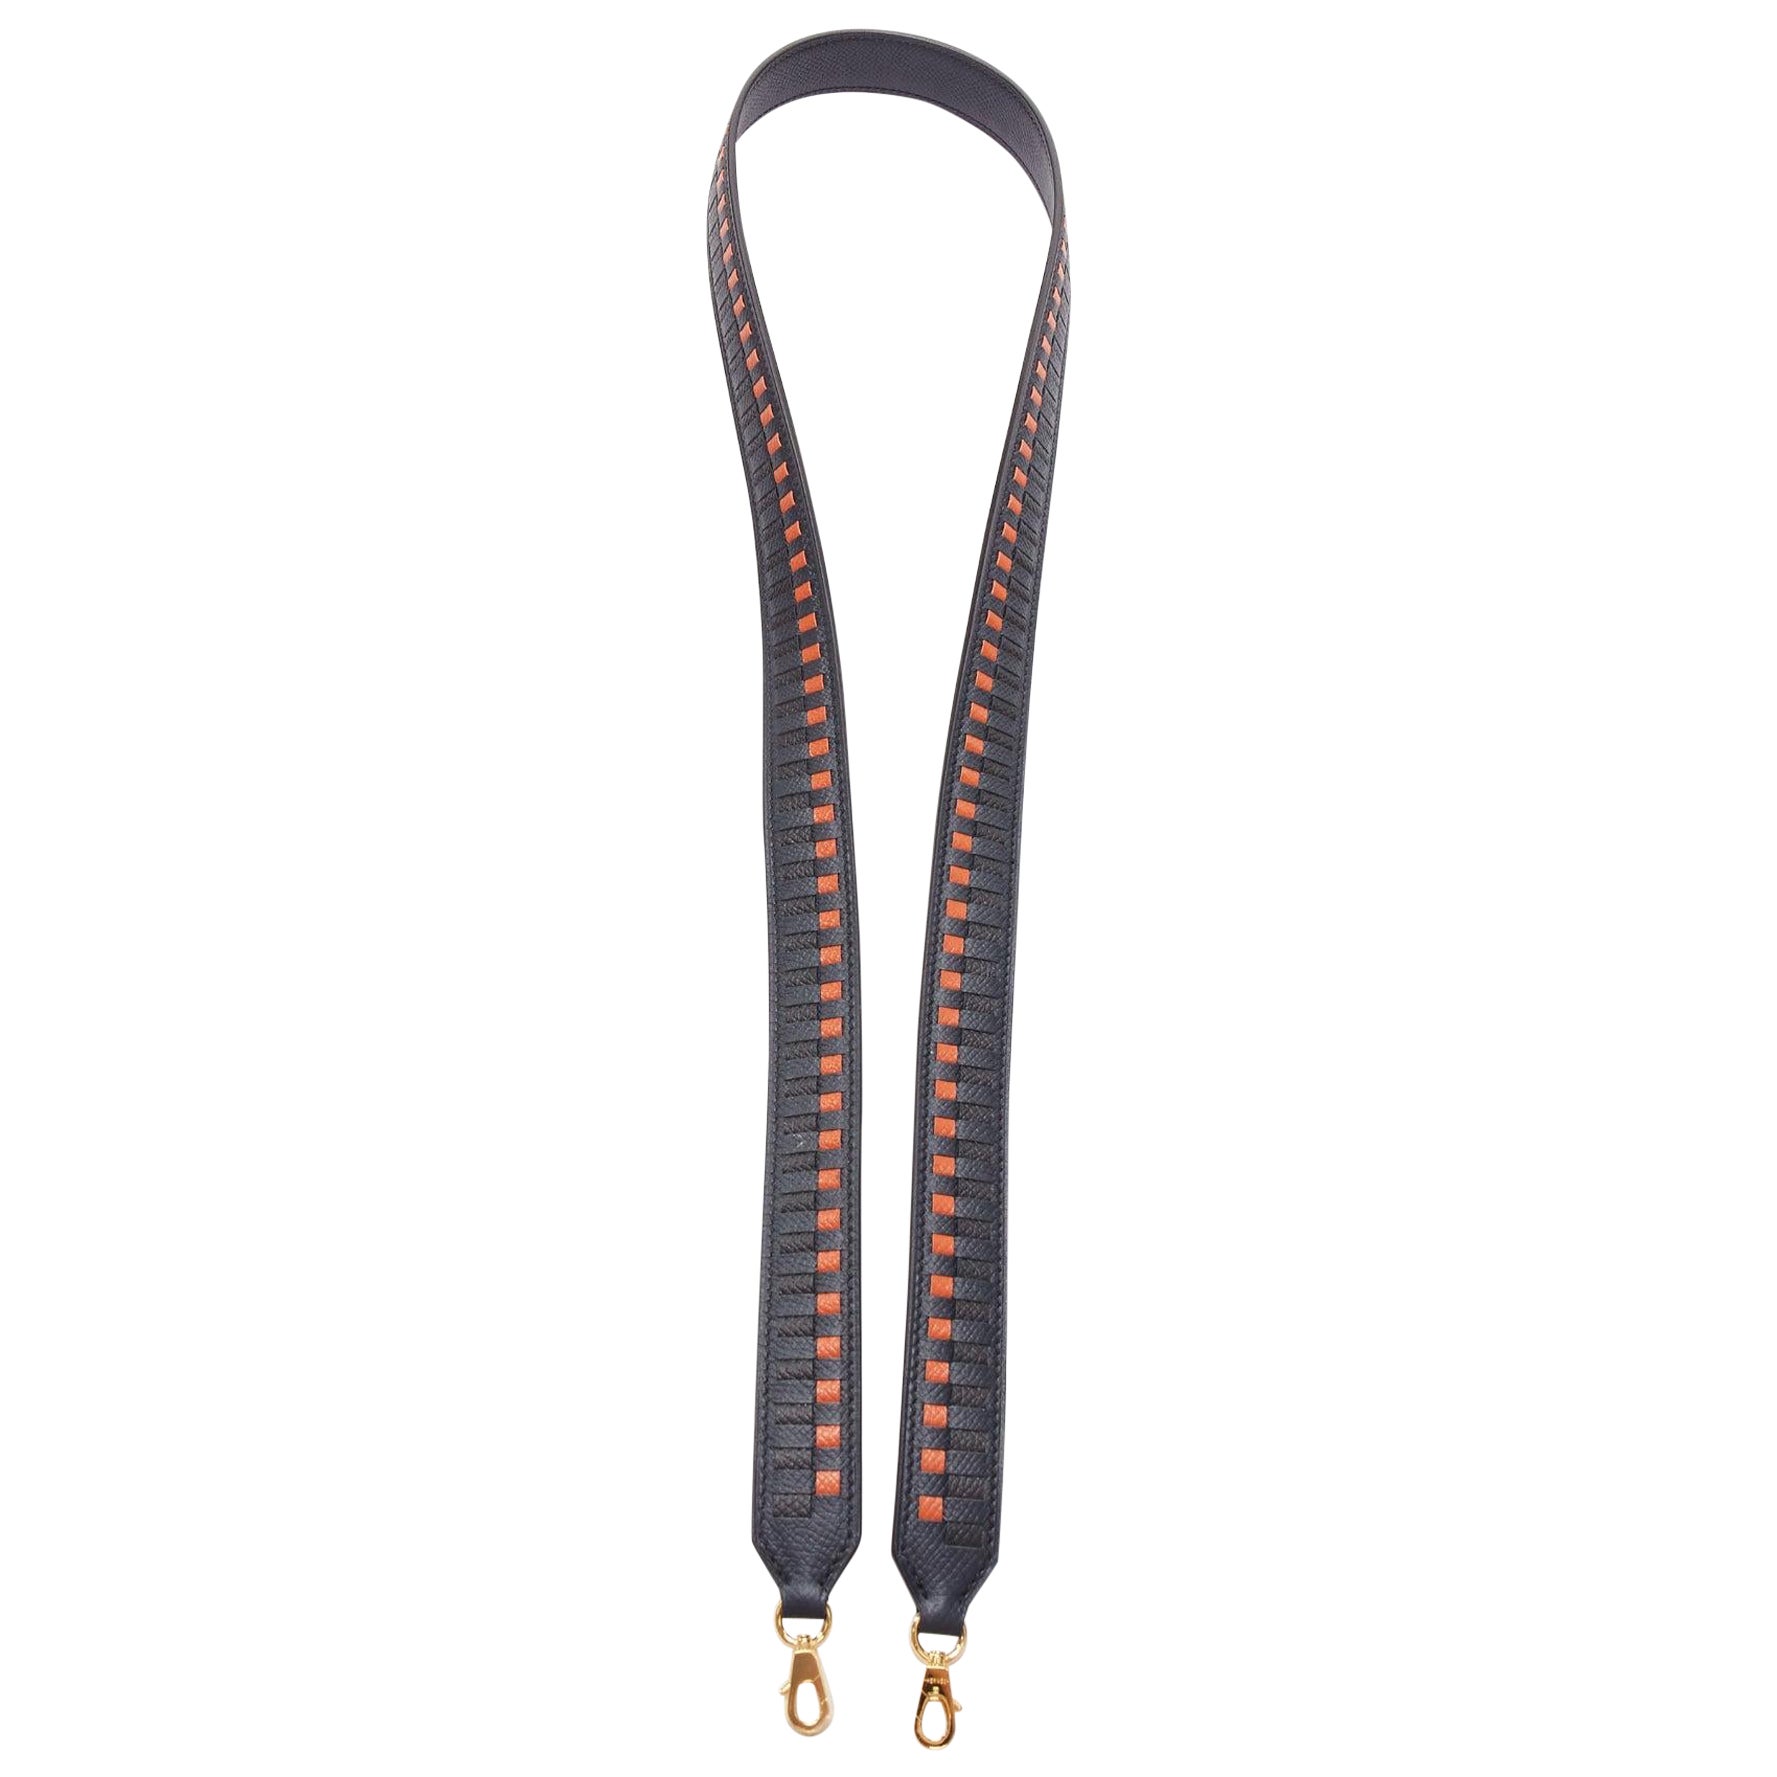 HERMES Sangle 25 orange black woven leather gold hardware bag strap